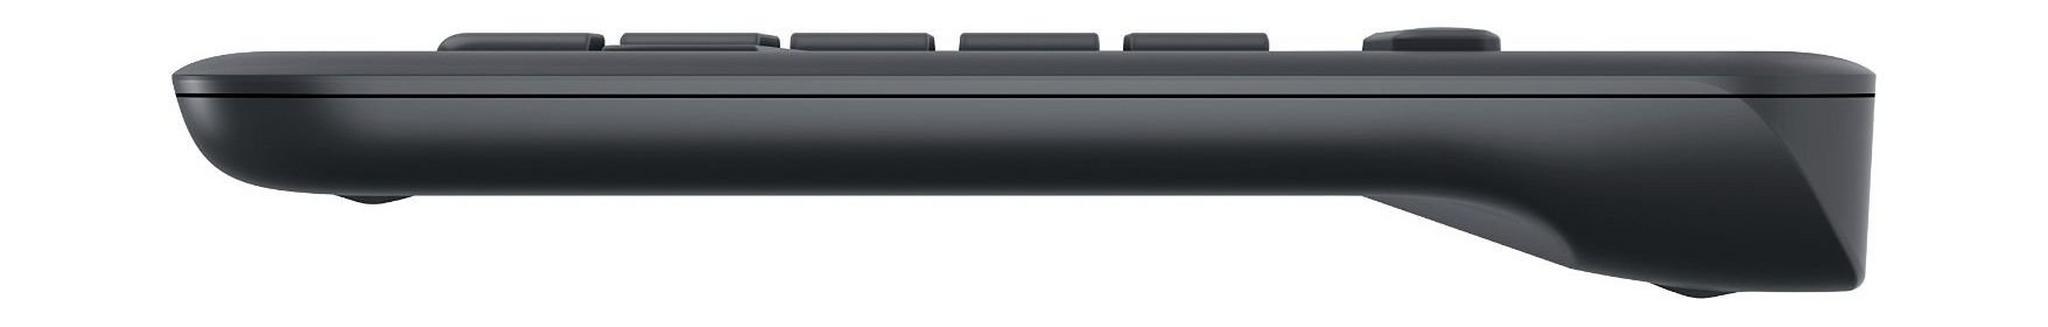 Logitech All-In-One Wireless Touch Keyboard K400 Plus - Dark